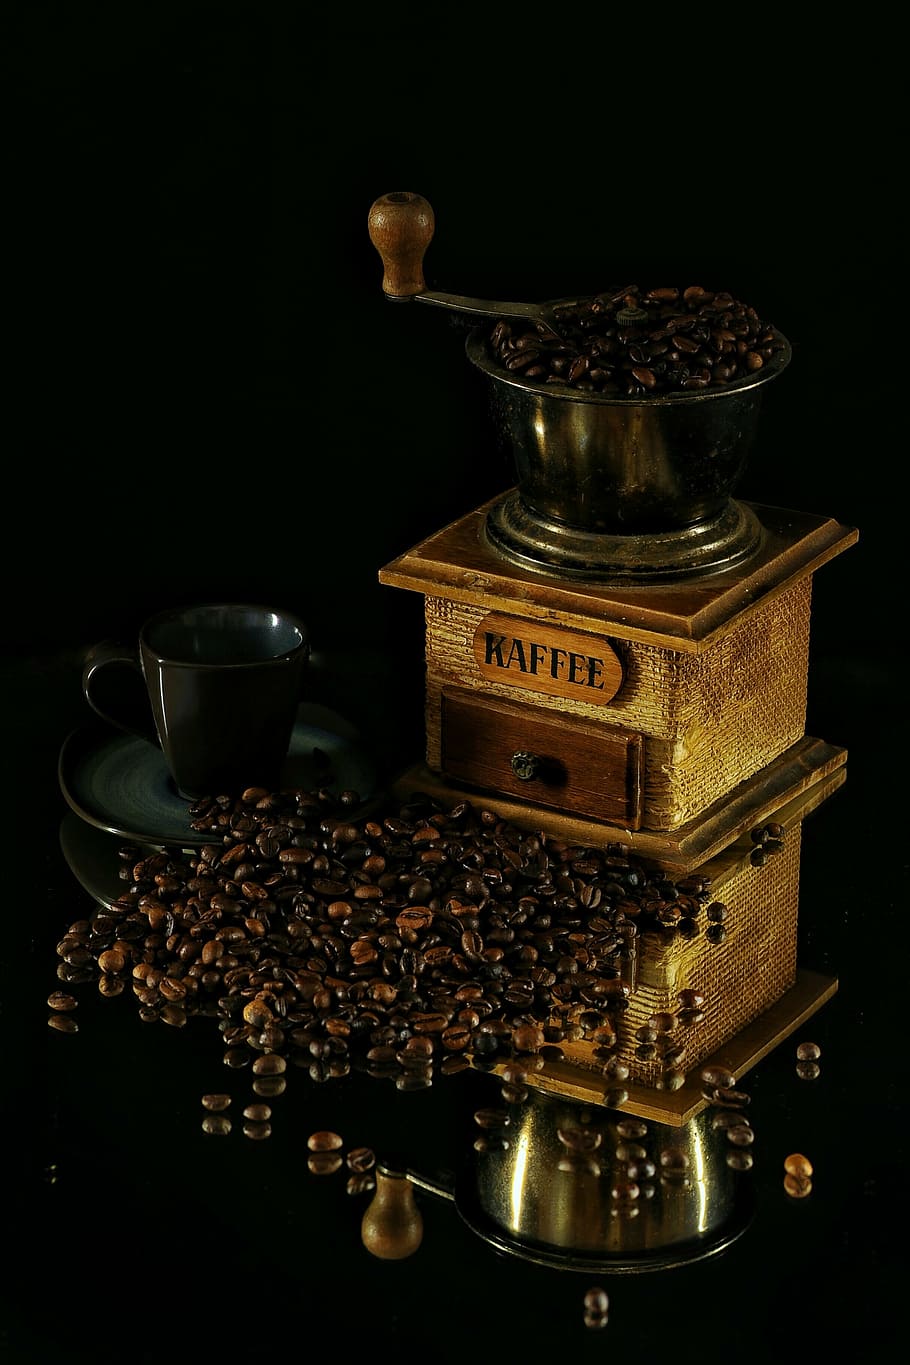 コーヒー豆, 横, 黒, セラミック, ティーカップ, ヴィンテージ, マニュアル, コーヒー醸造者, コーヒー, カップ